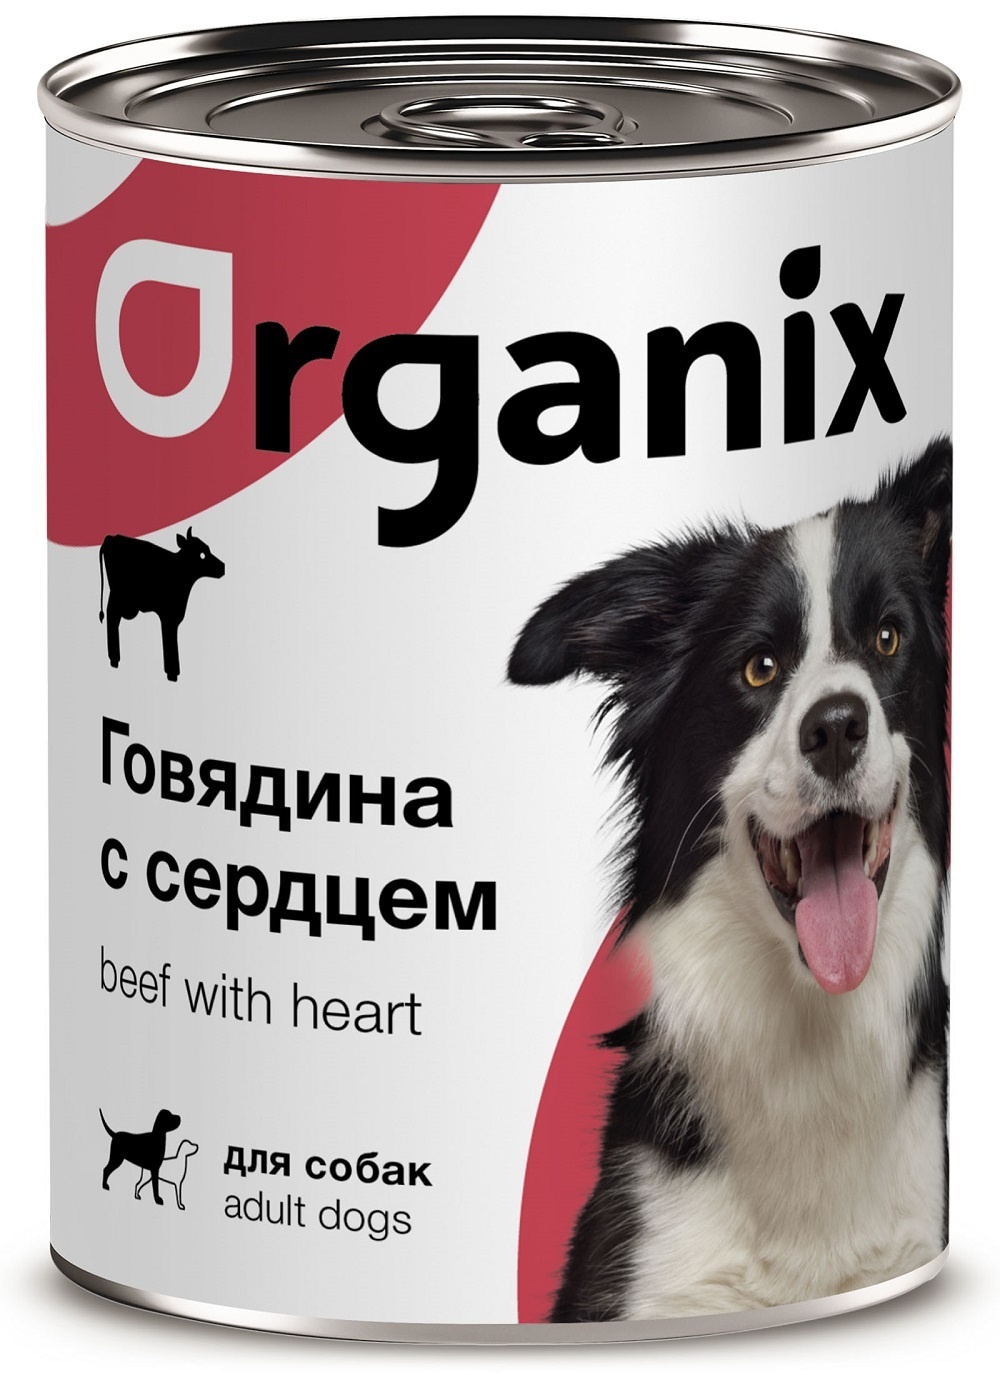 Organix консервы Organix консервы для собак, с говядиной и сердцем (410 г) organix консервы консервы для собак рагу из гуся с языком и цуккини 22ел16 0 4 кг